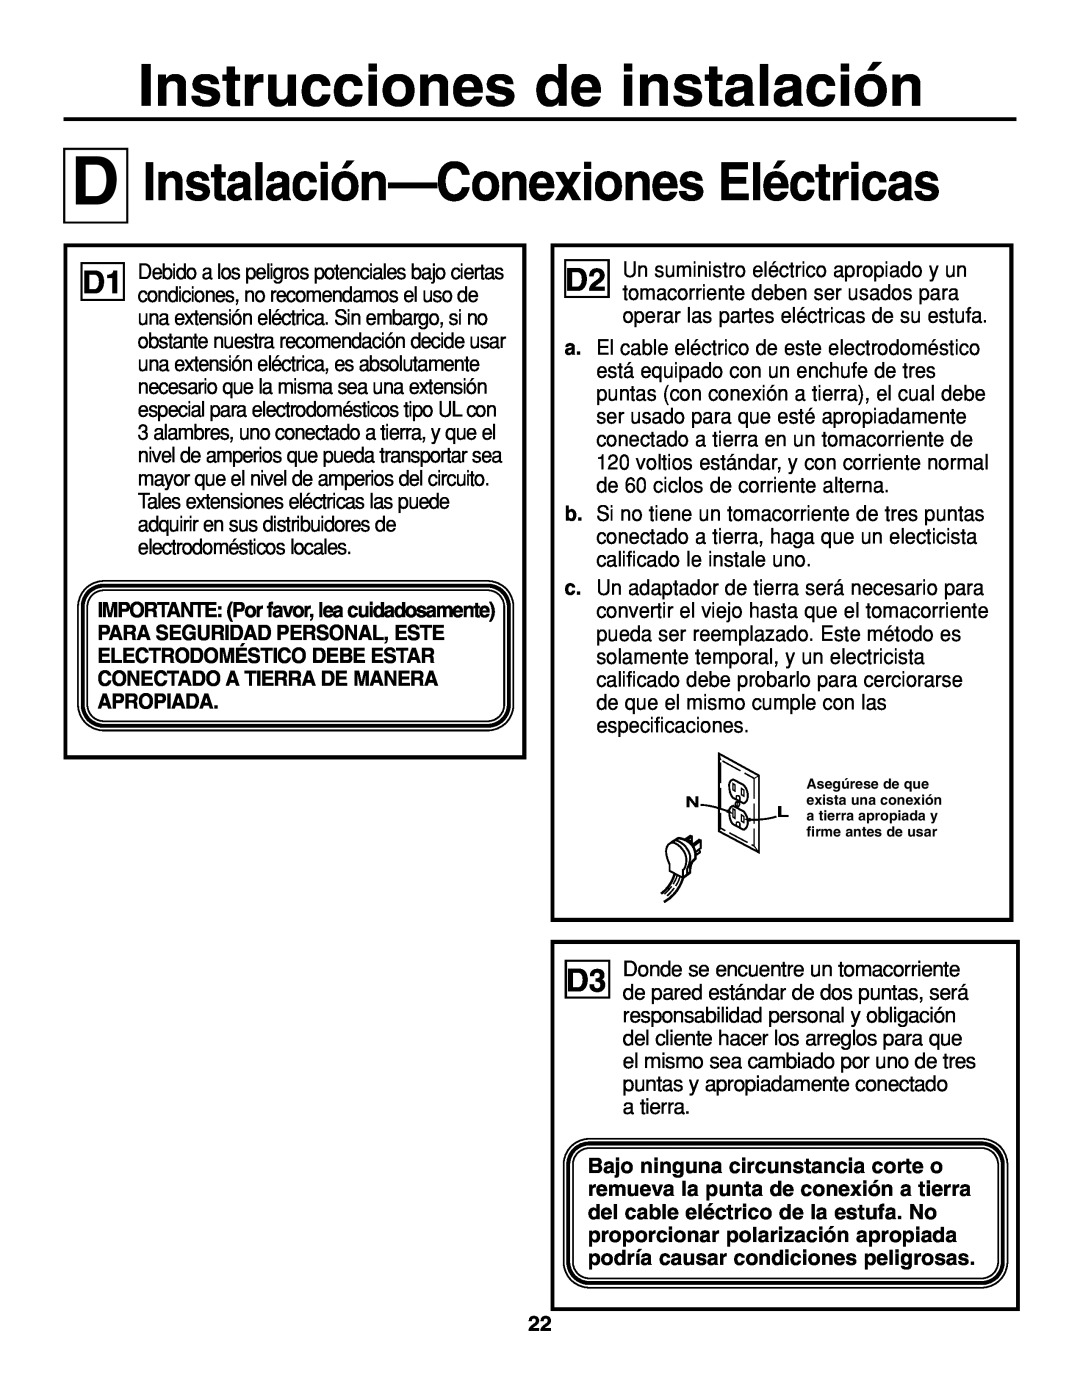 GE JGP337 operating instructions D Instalación-Conexiones Eléctricas, Instrucciones de instalación 